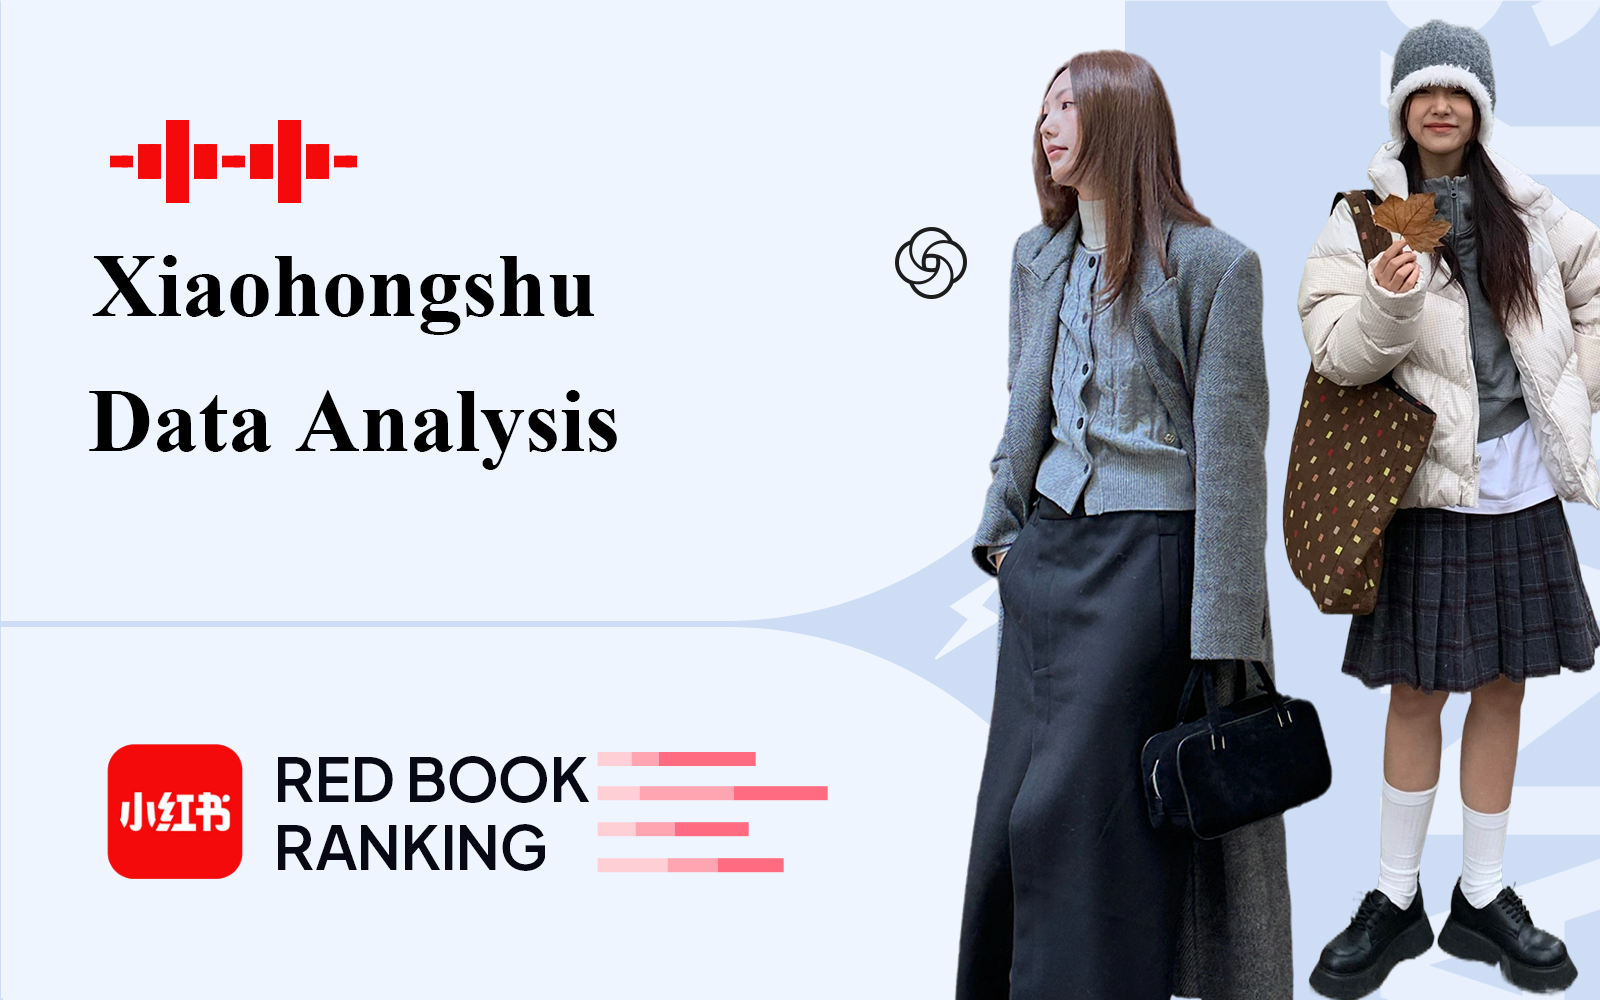 The Xiaohongshu Data Analysis of Womenswear in December